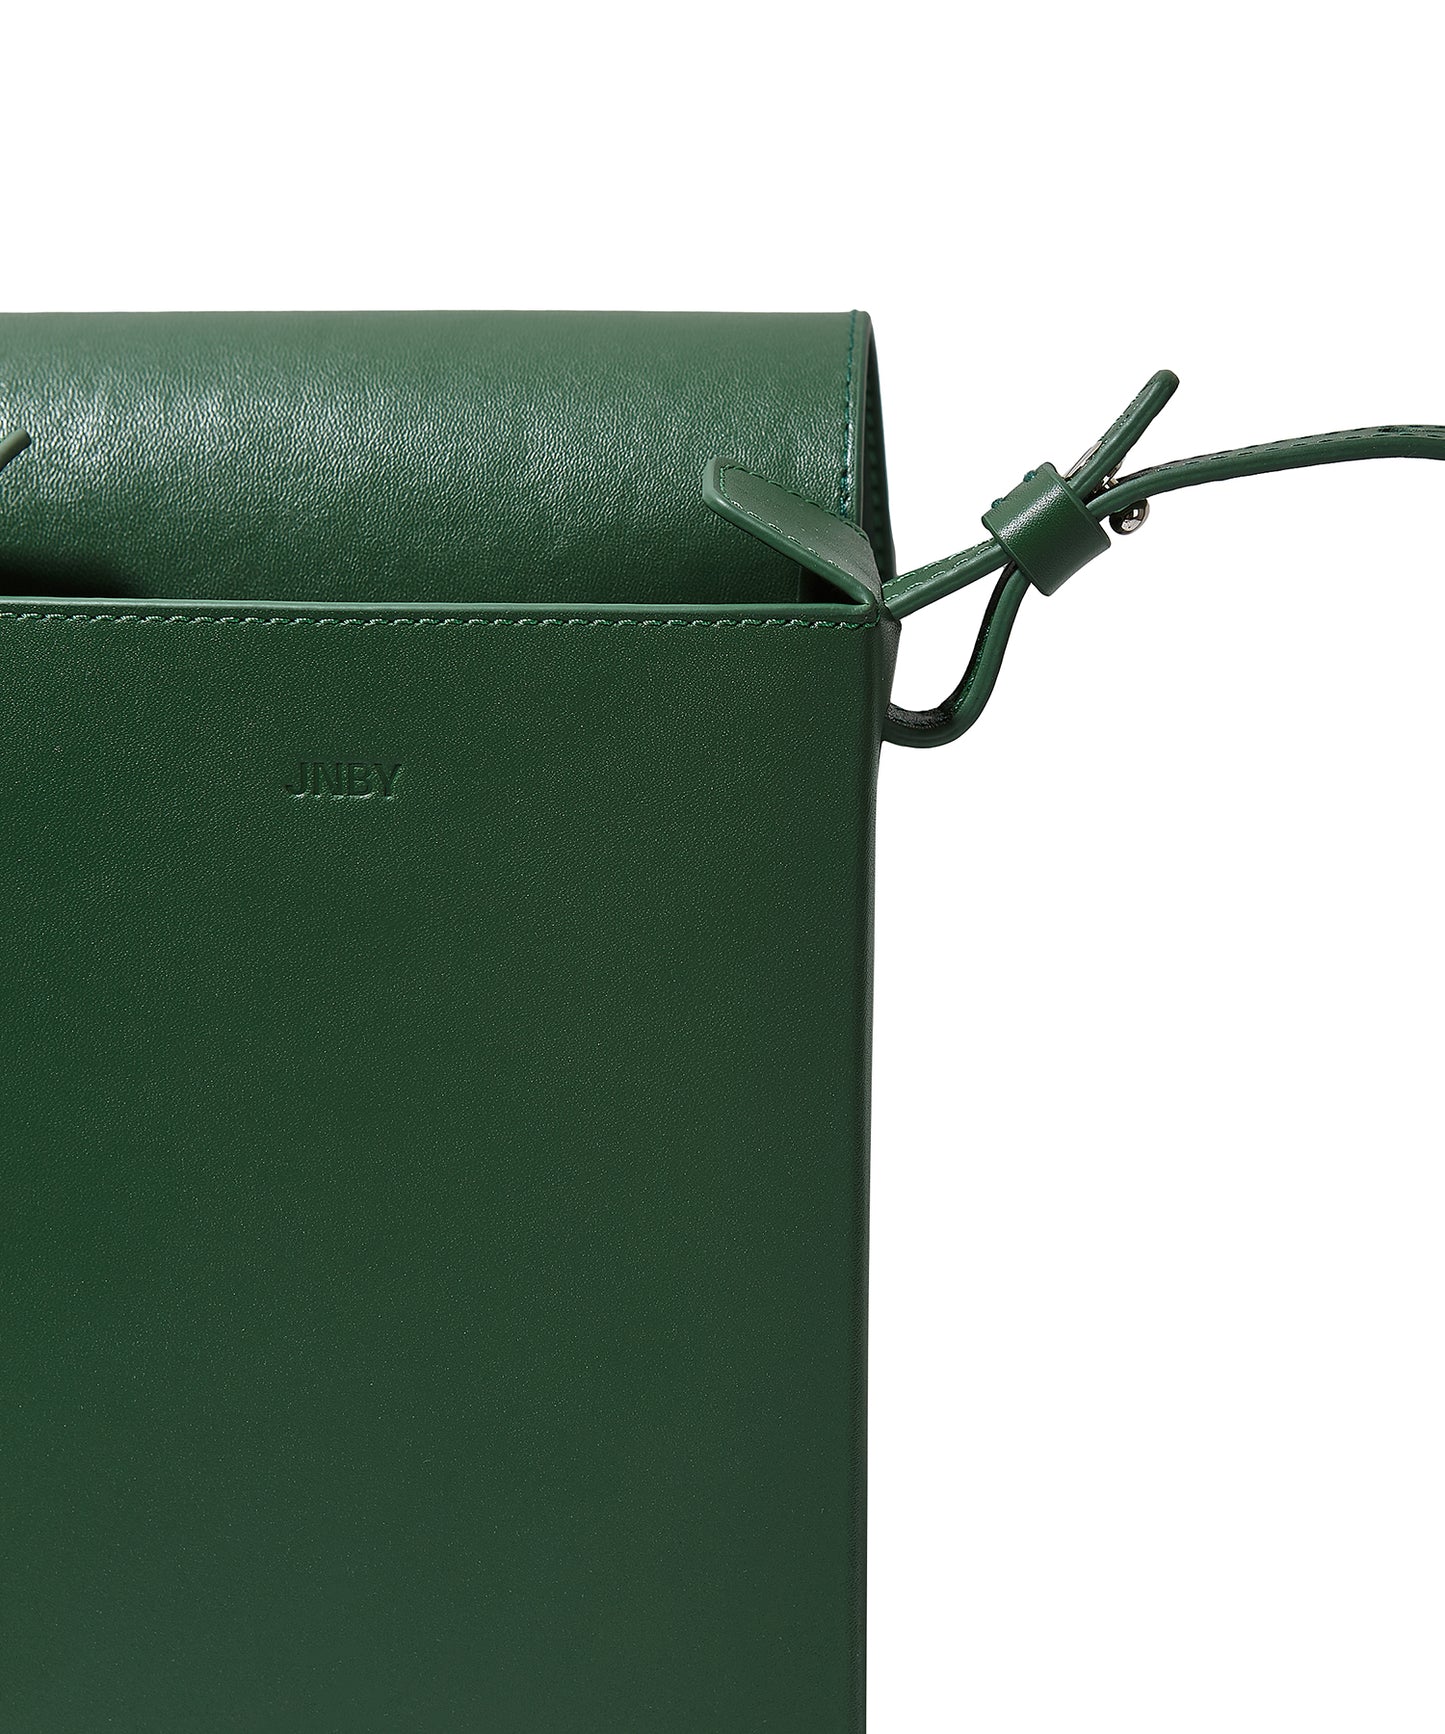 Flap-front Rectangular Leather Shoulder Bag